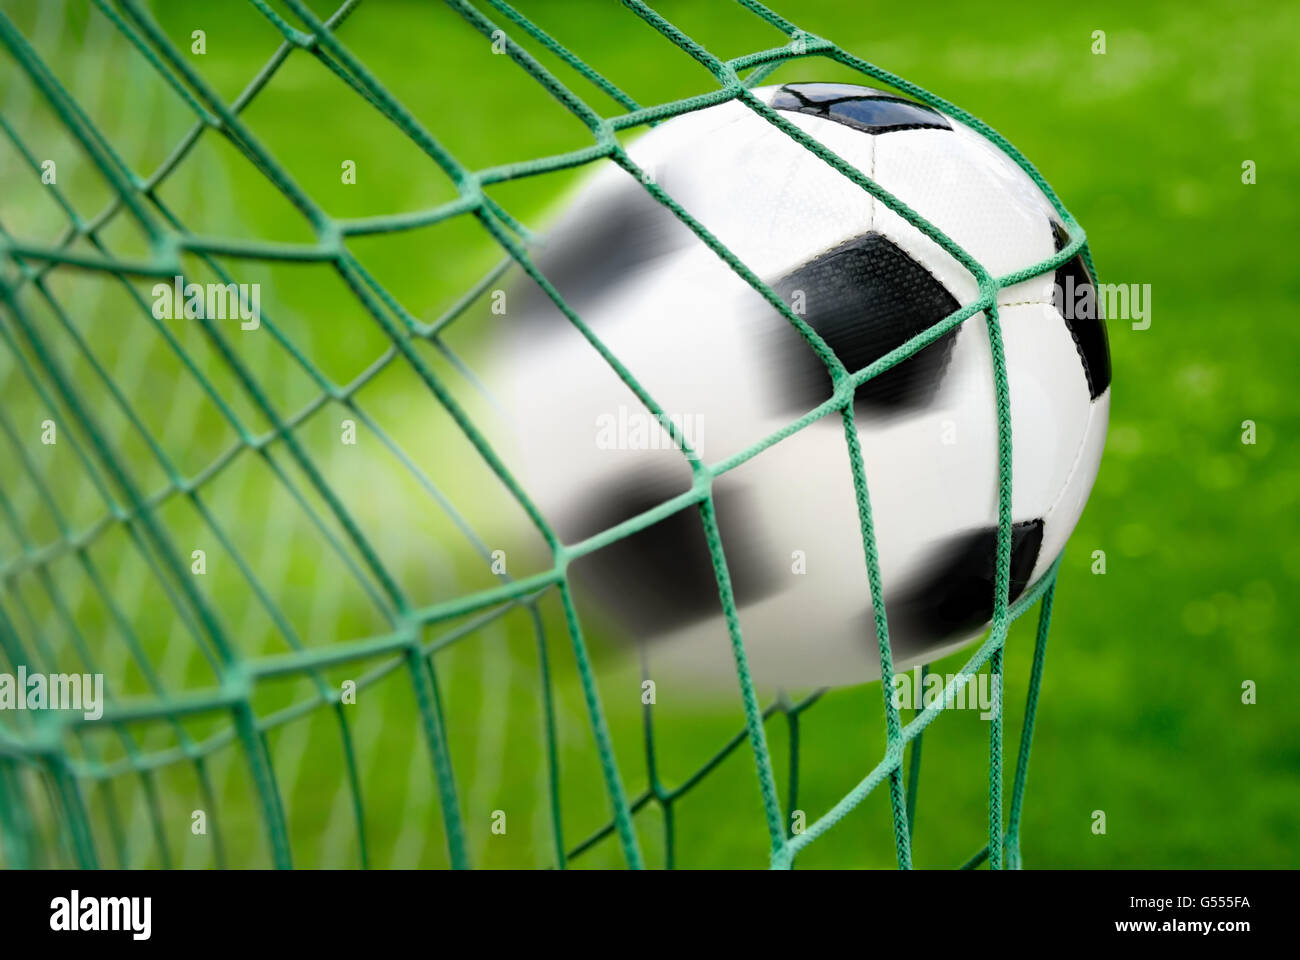 El fútbol o el gol, con la pelota dejando un rastro en el aire como un efecto de desenfoque de movimiento dinámico Foto de stock